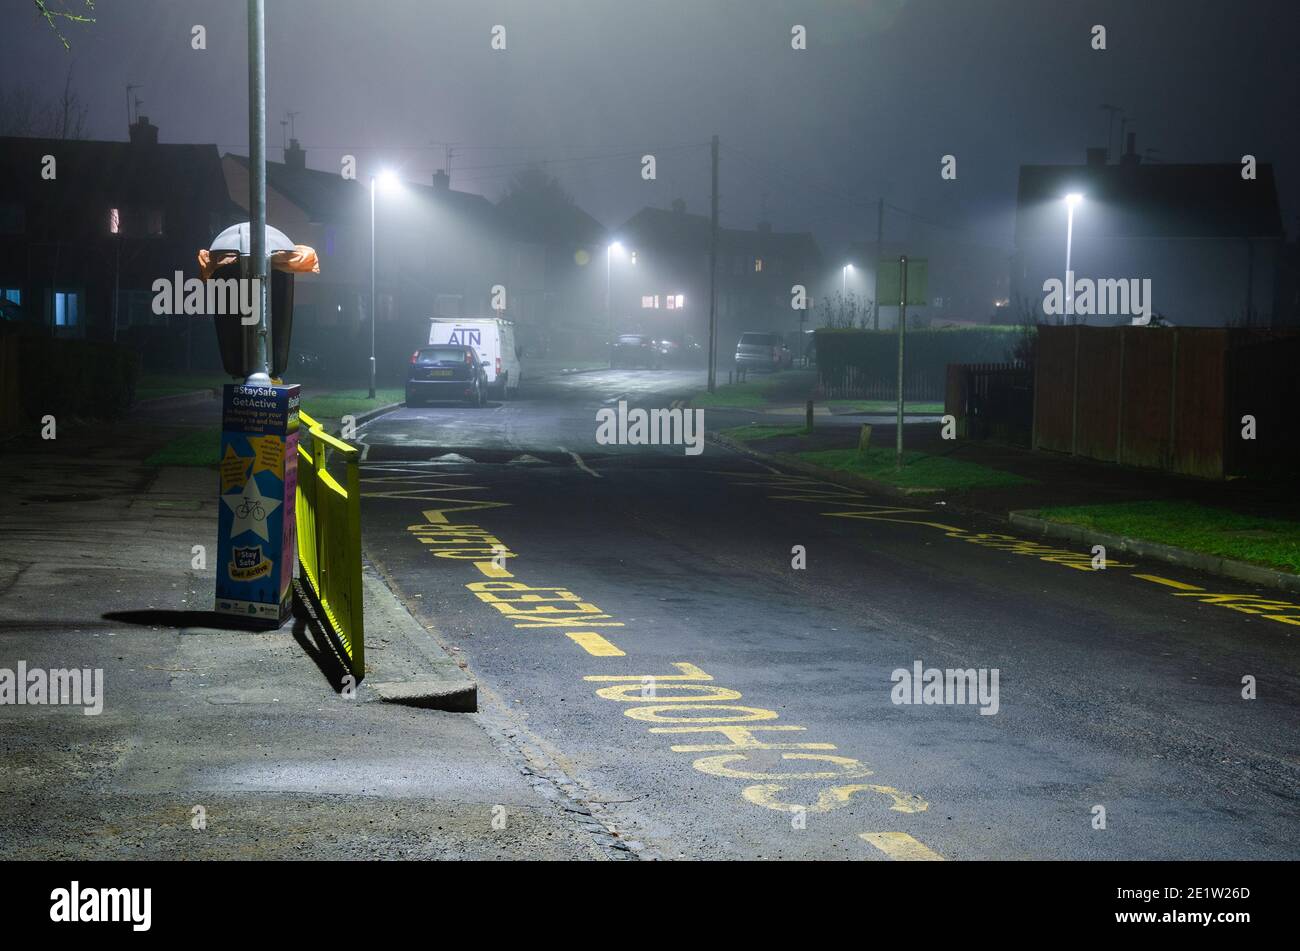 Foto nocturna de 'Escuela mantener claro' pintada en una carretera en una zona residencial. Las luces de la calle parecen difundidas en la niebla. Foto de stock